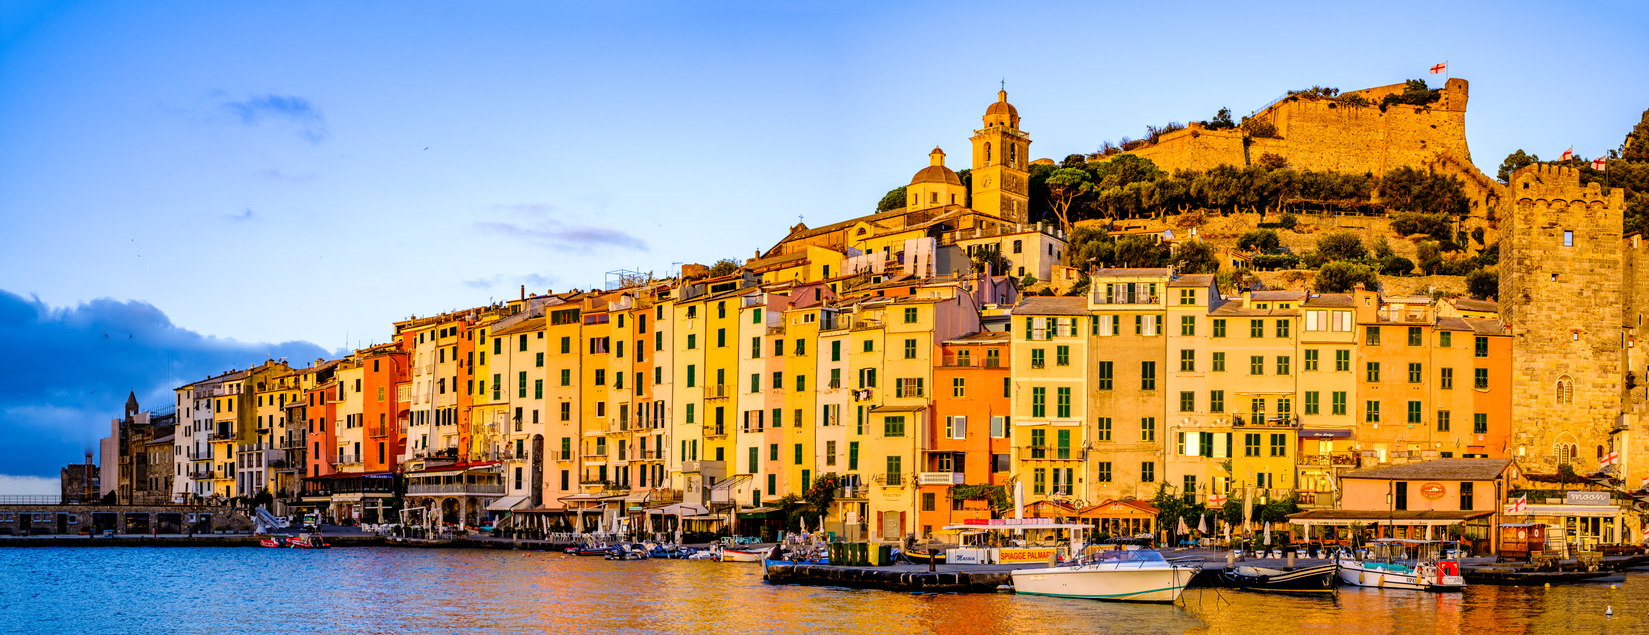 Porto Venere, Cinque Terre, Italie du nord. © iStock / FooTToo